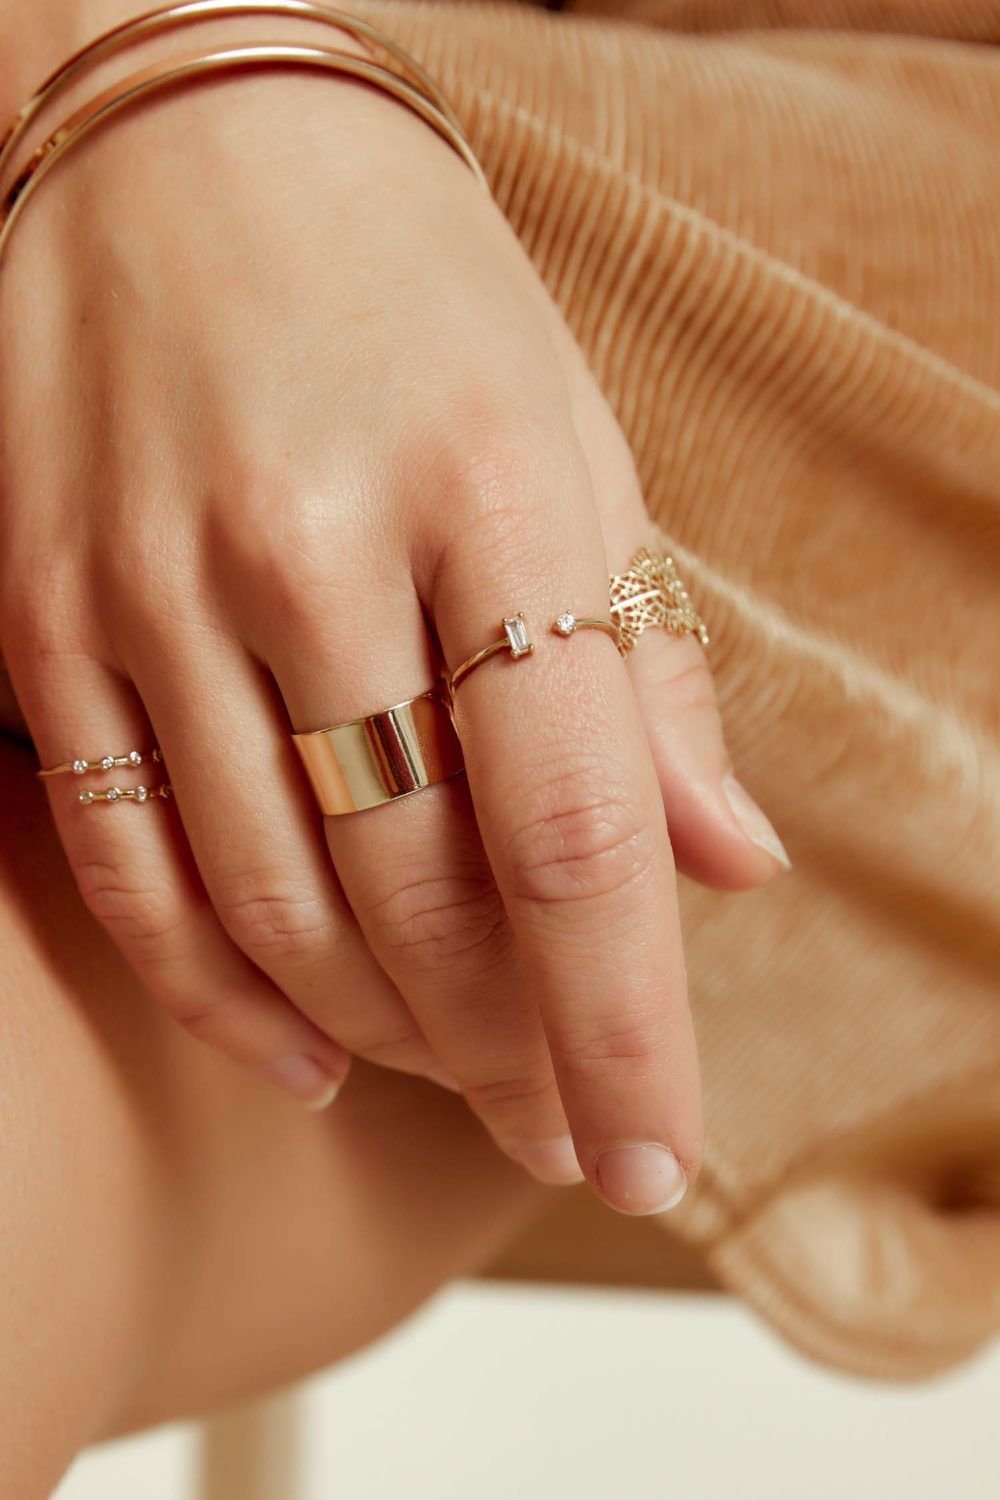 Надеты кольца золотые. Красивые кольца. Модные золотые кольца. Кольцо на указательном пальце. Красивые женские кольца.